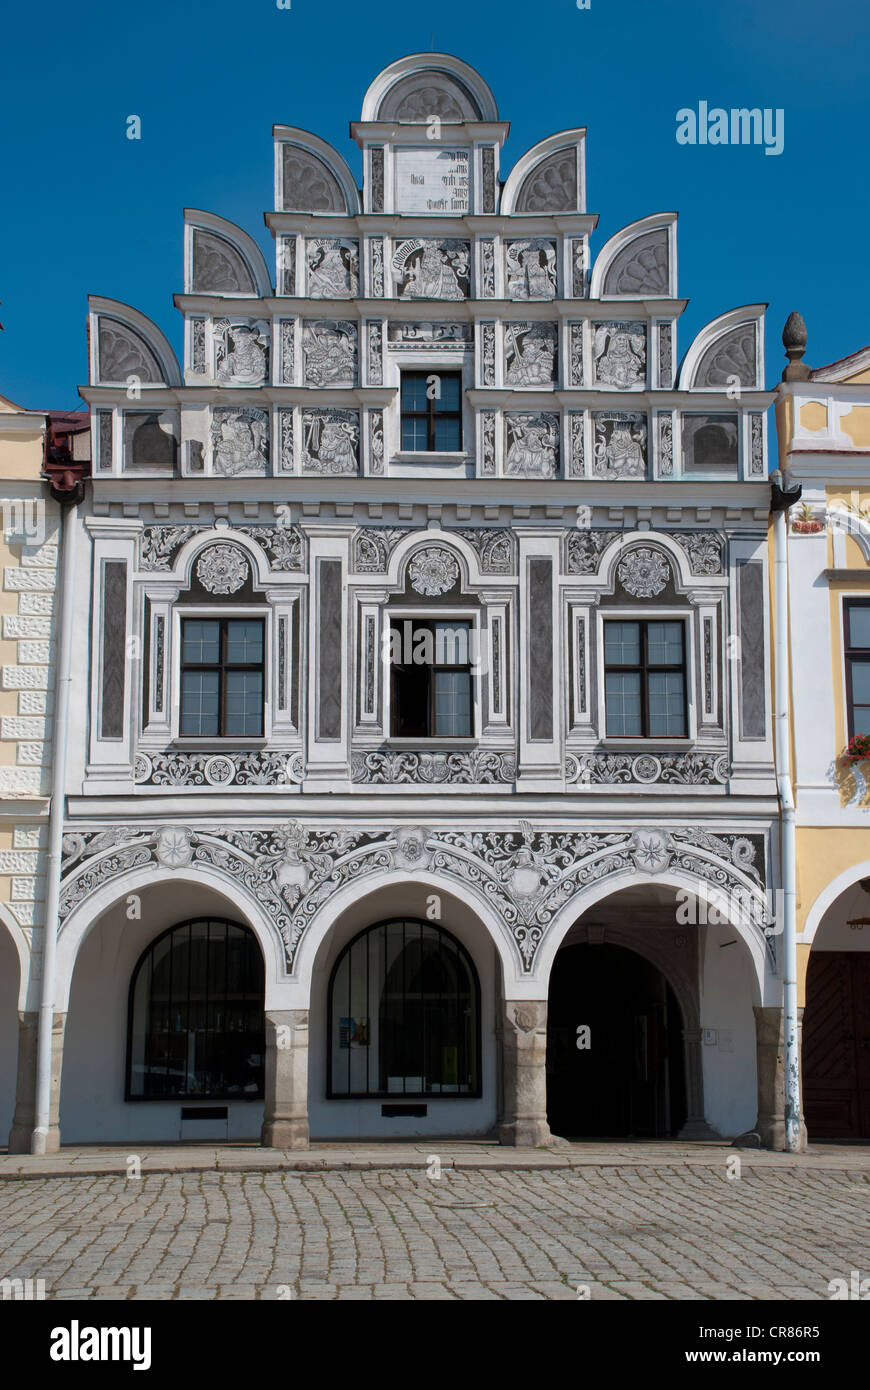 Sgraffito facade, townhouse, Tel&#269;, Telc, Czech Republic, Europe Stock Photo